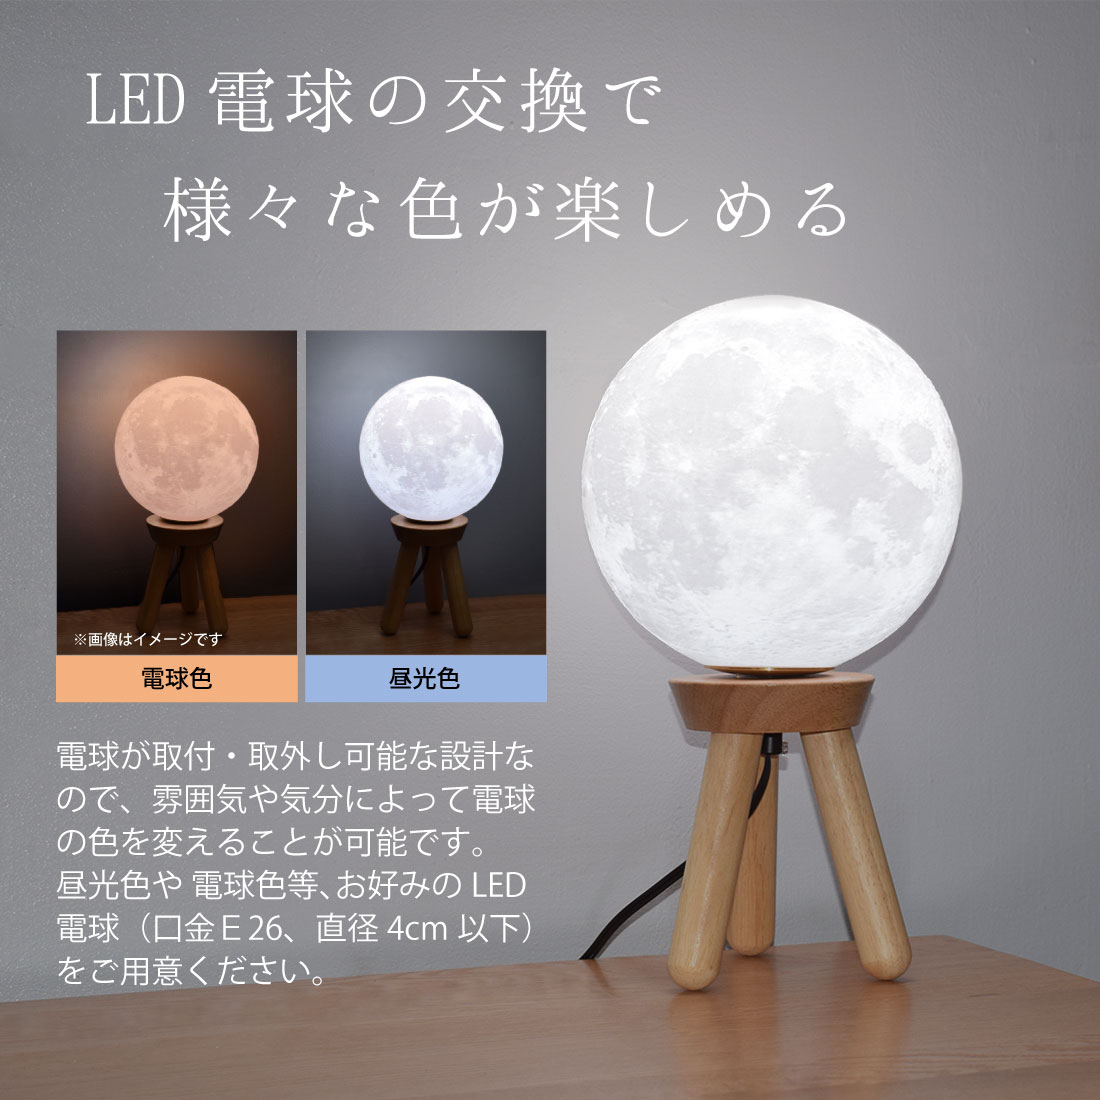 月ライト 18cm LED 間接照明 調色 調光 色切替 木製台座 テーブル 